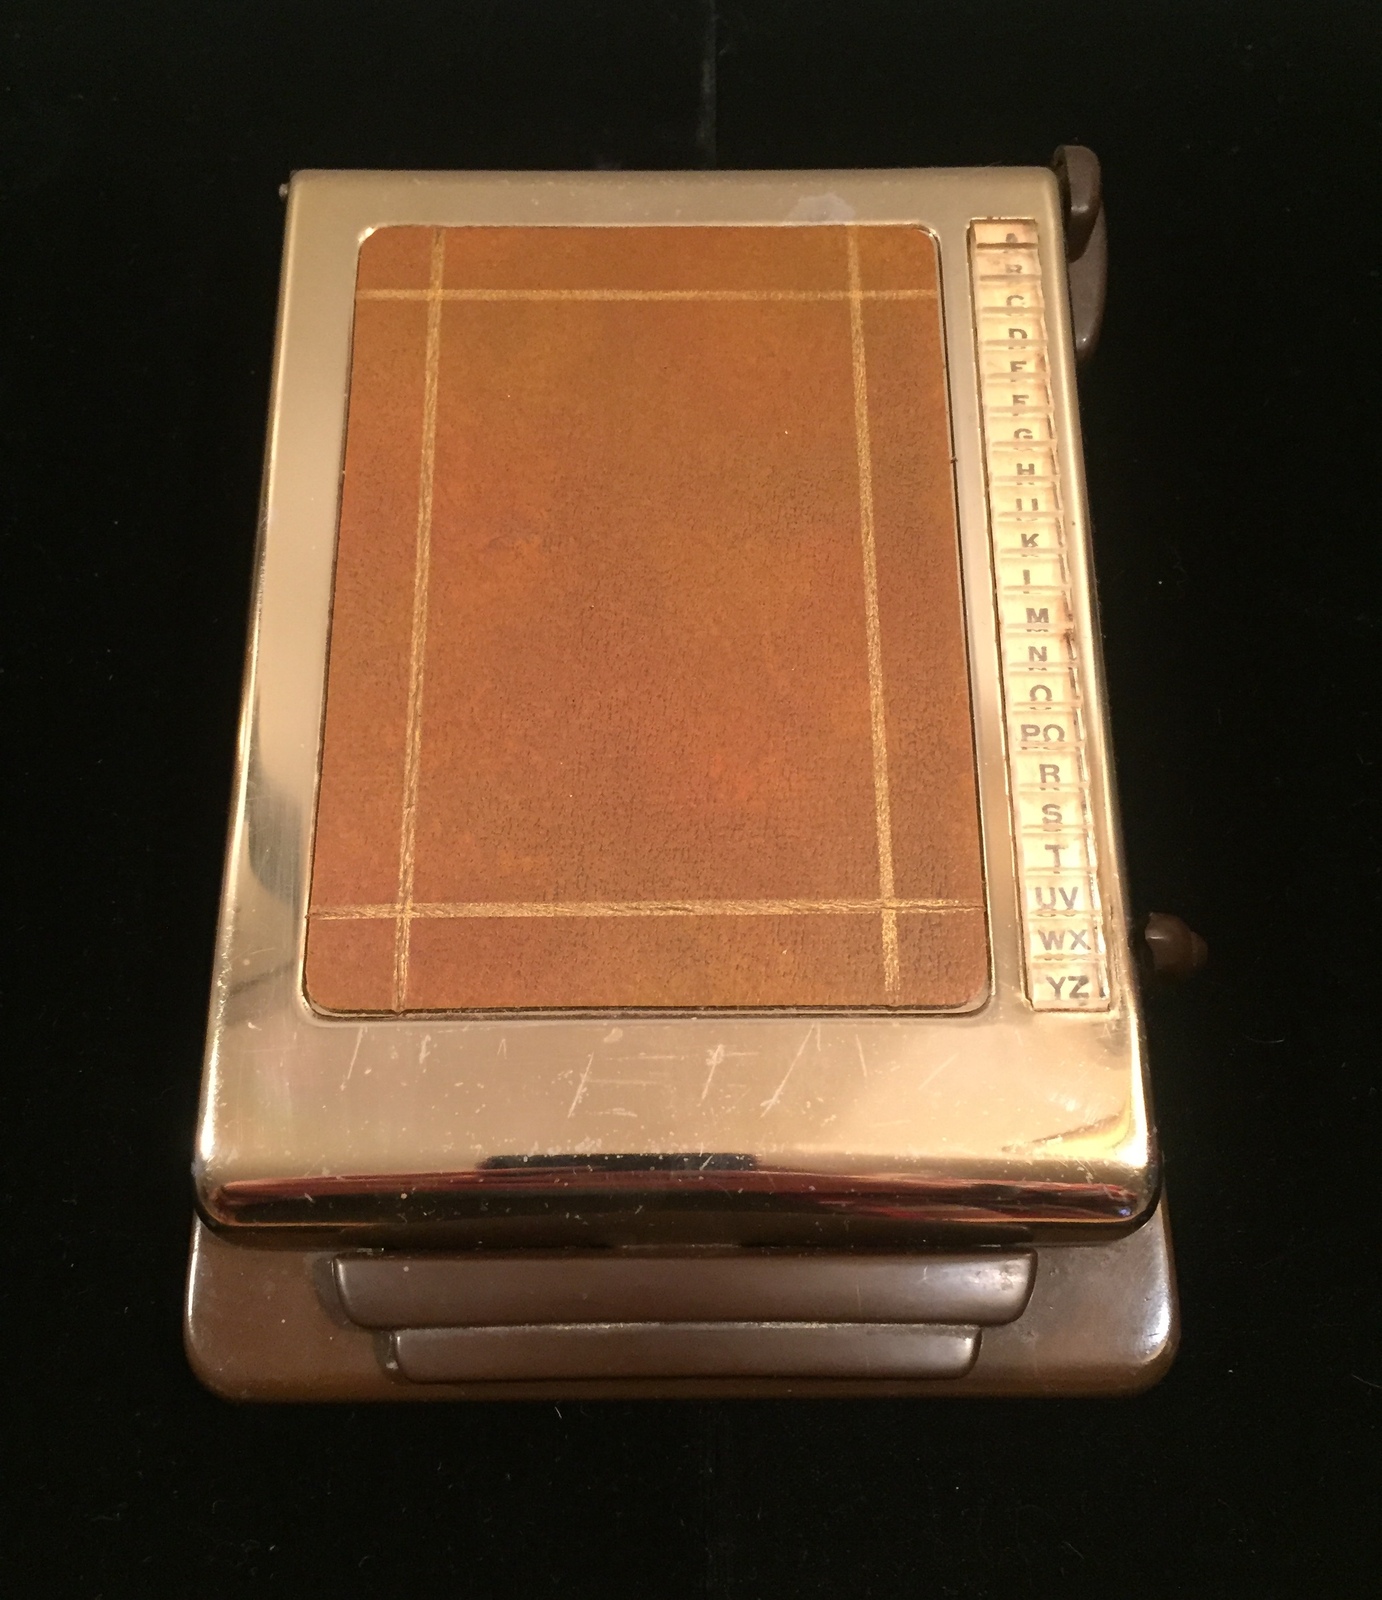 Vintage 60s Bates Listfinder Address Book with slide edge - $20.00